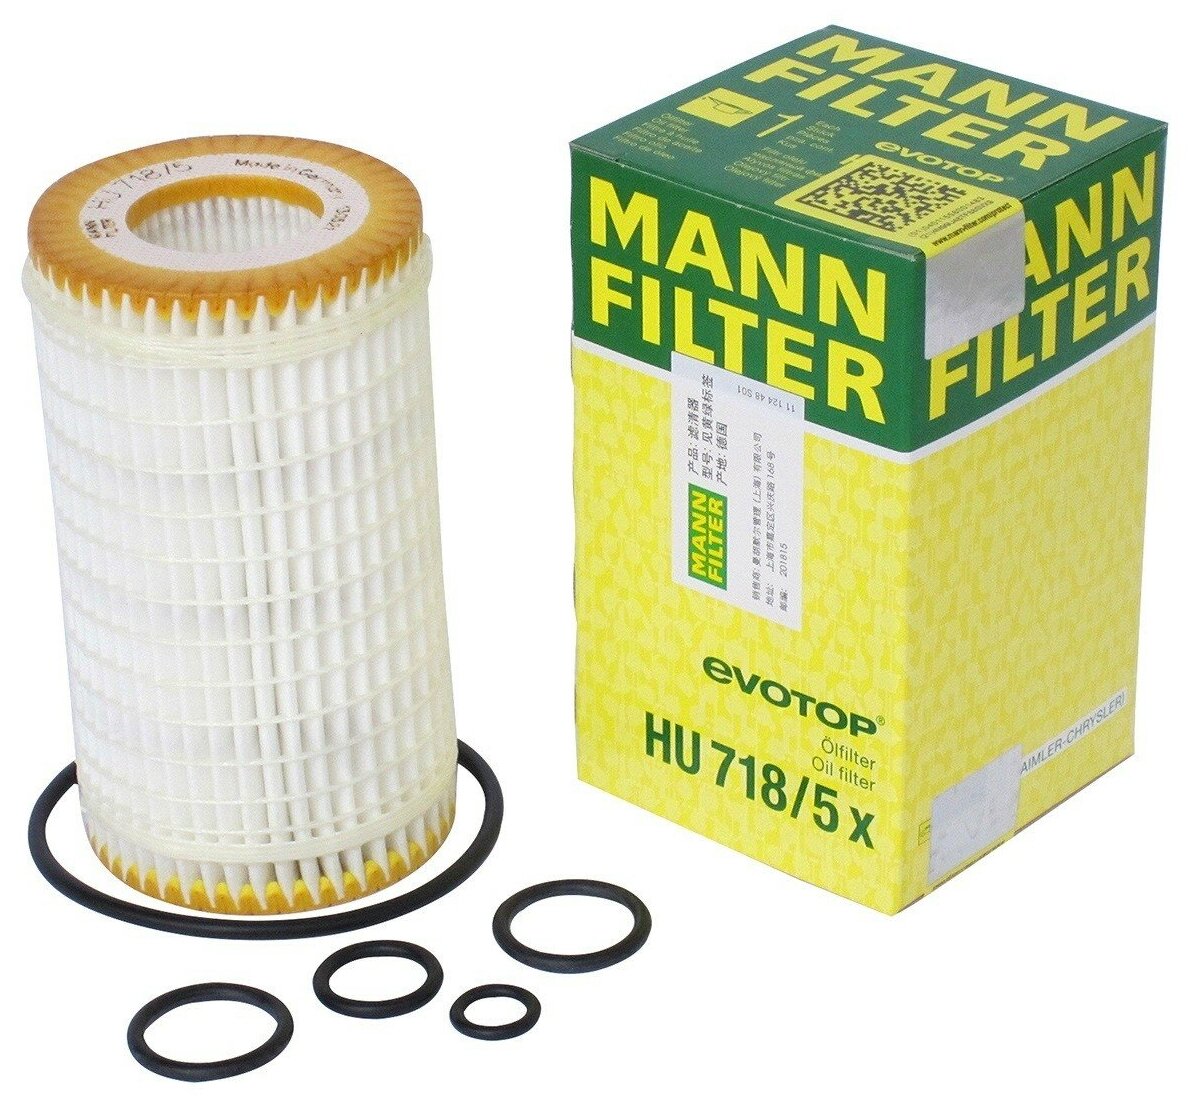 Фильтрующий элемент MANN-FILTER HU 718/5 x